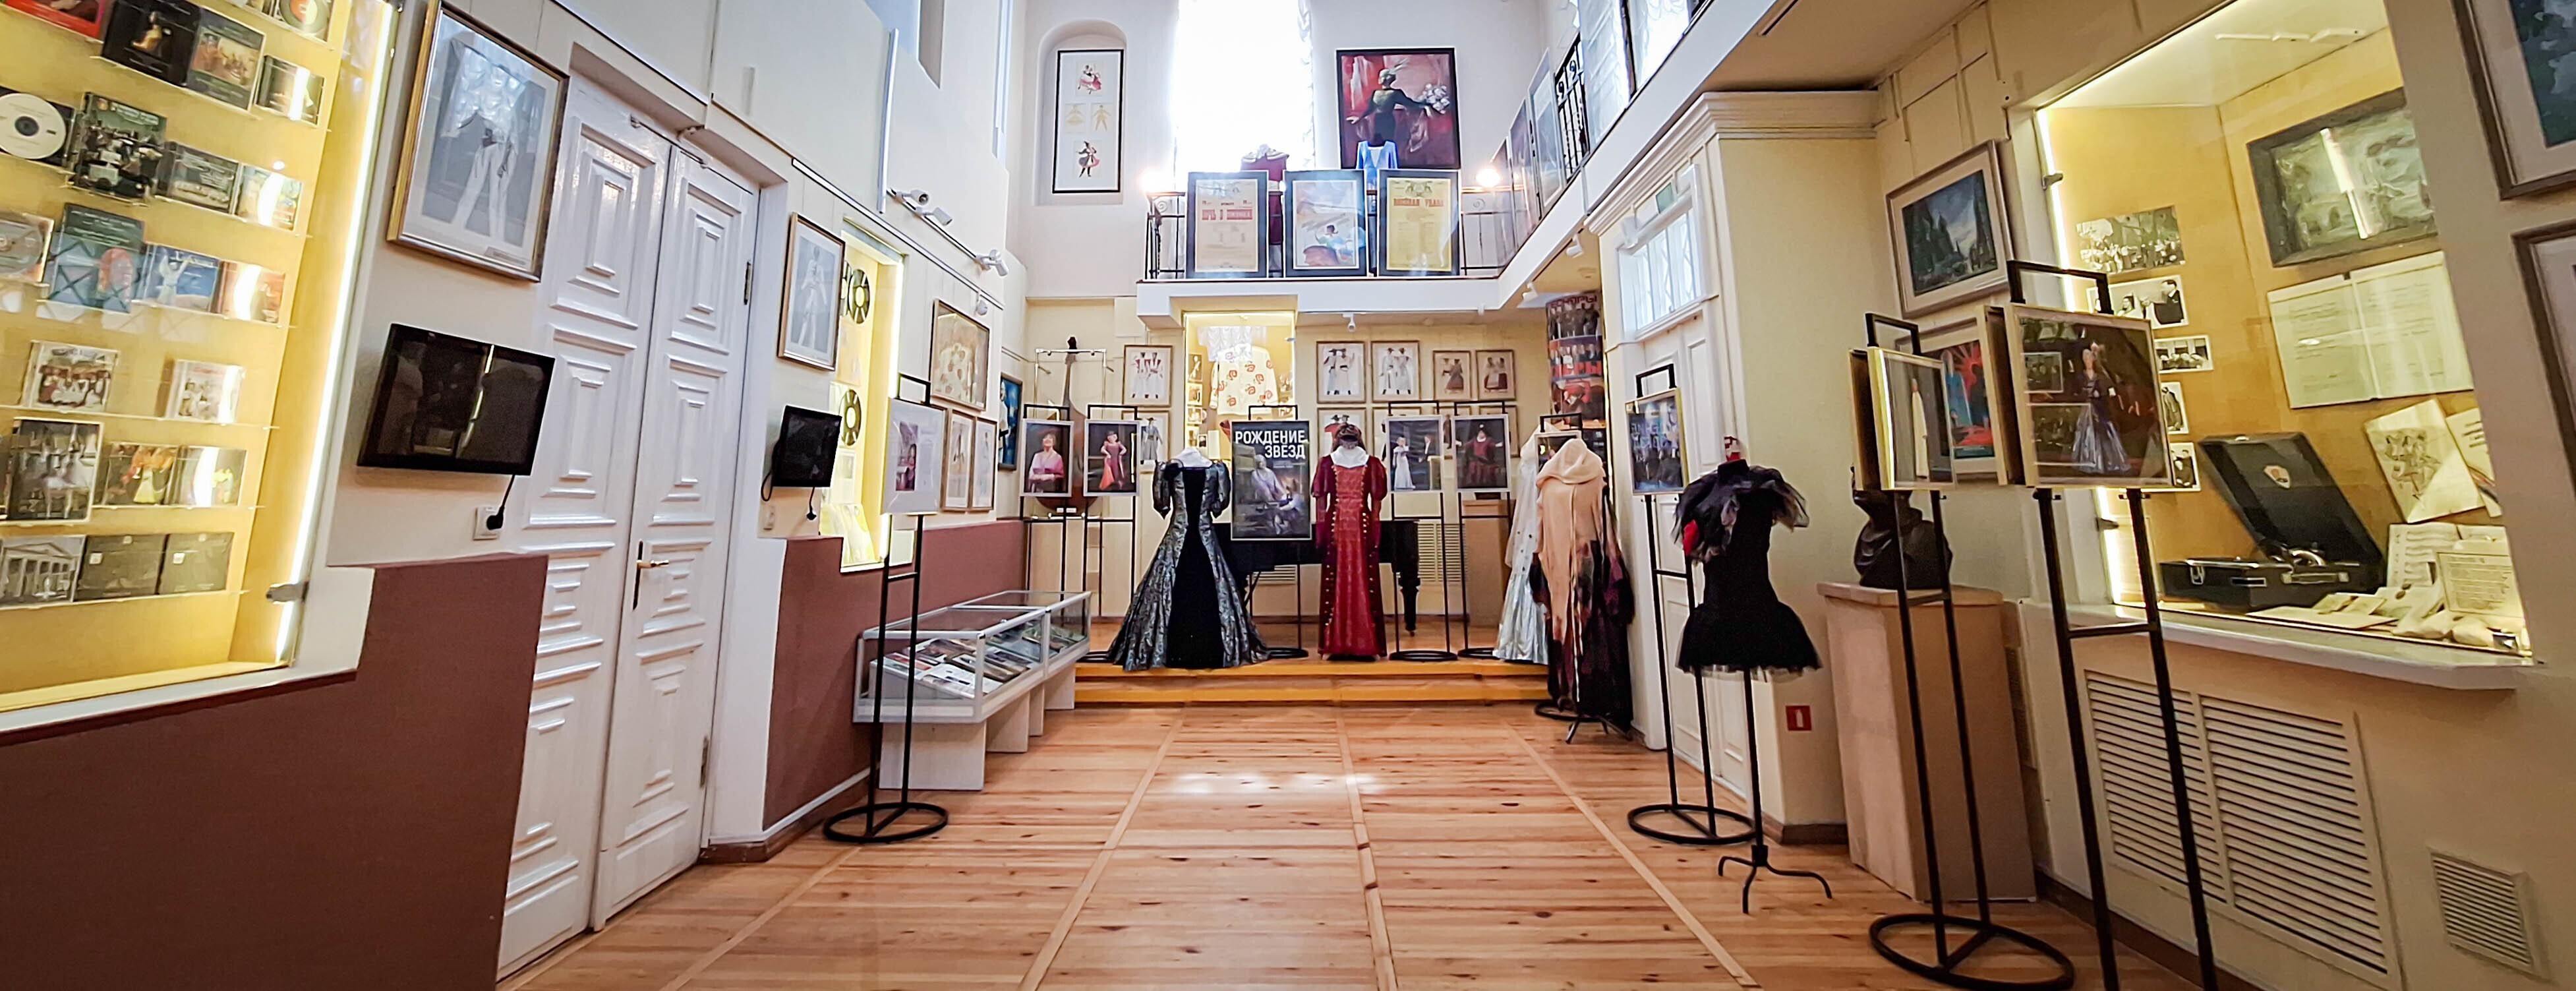 "Золотой голос белорусской оперетты" - выставка в Музее истории театральной и музыкальной культуры